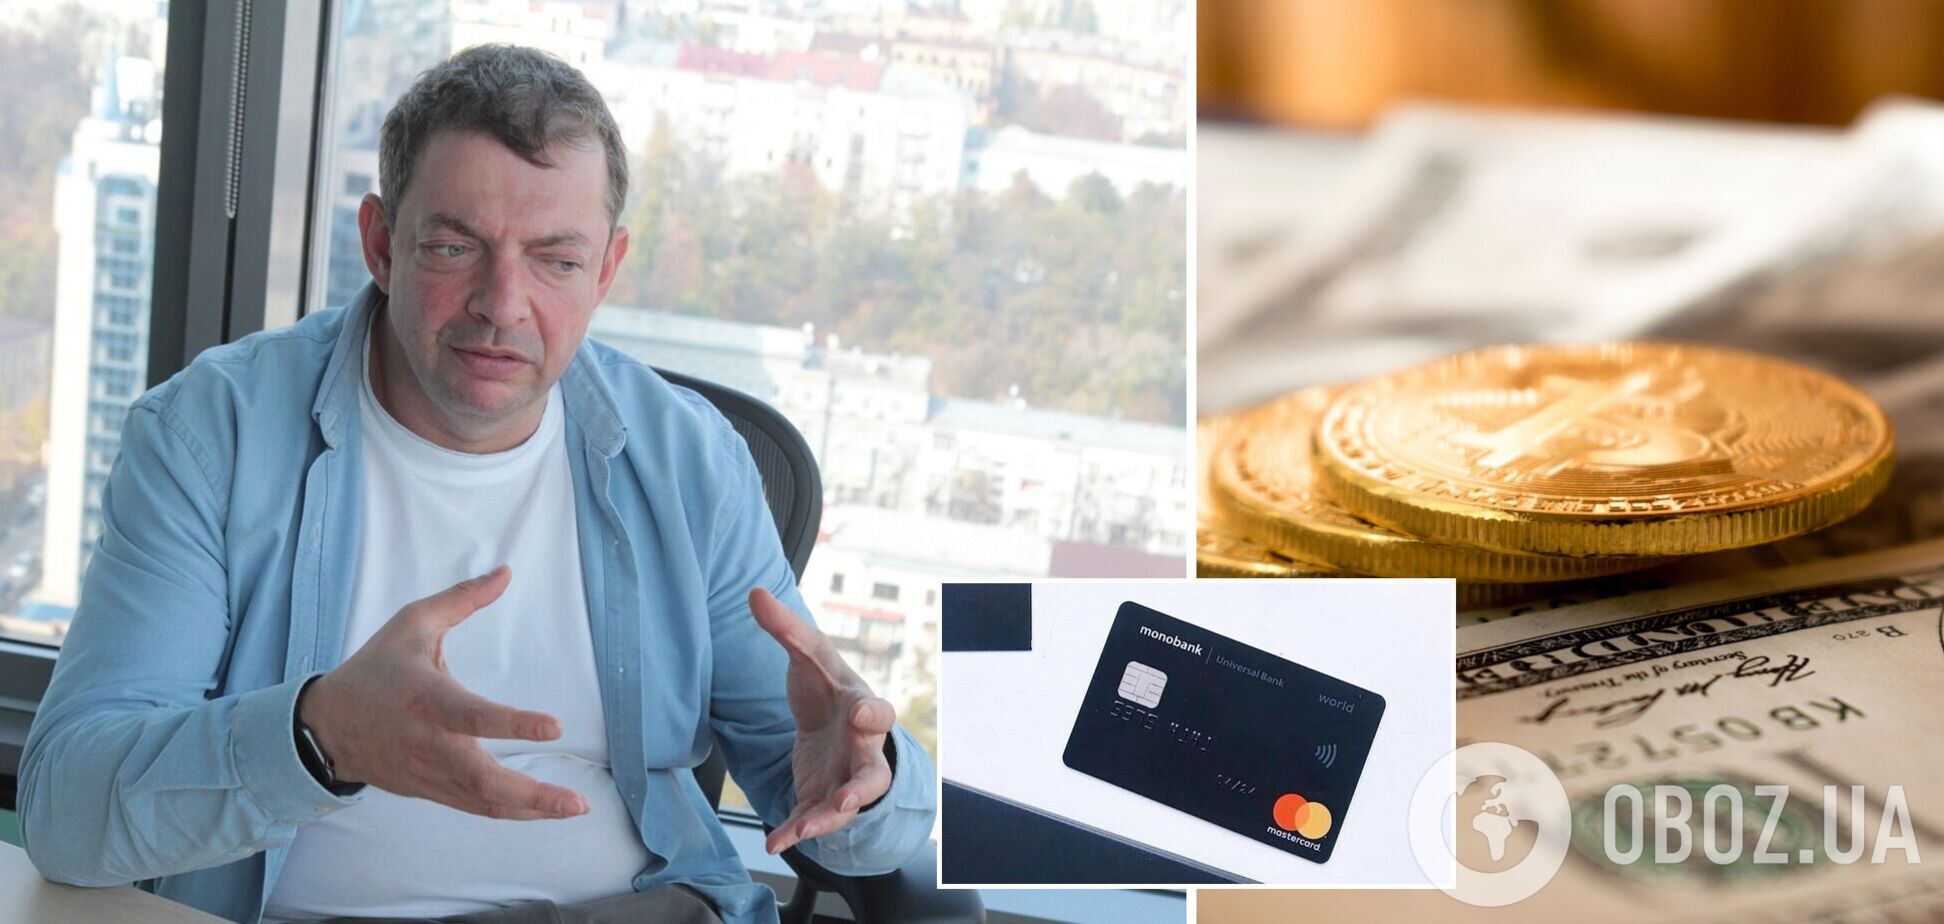 Выпуск первой биткоин-карты в Украине уже не за горами